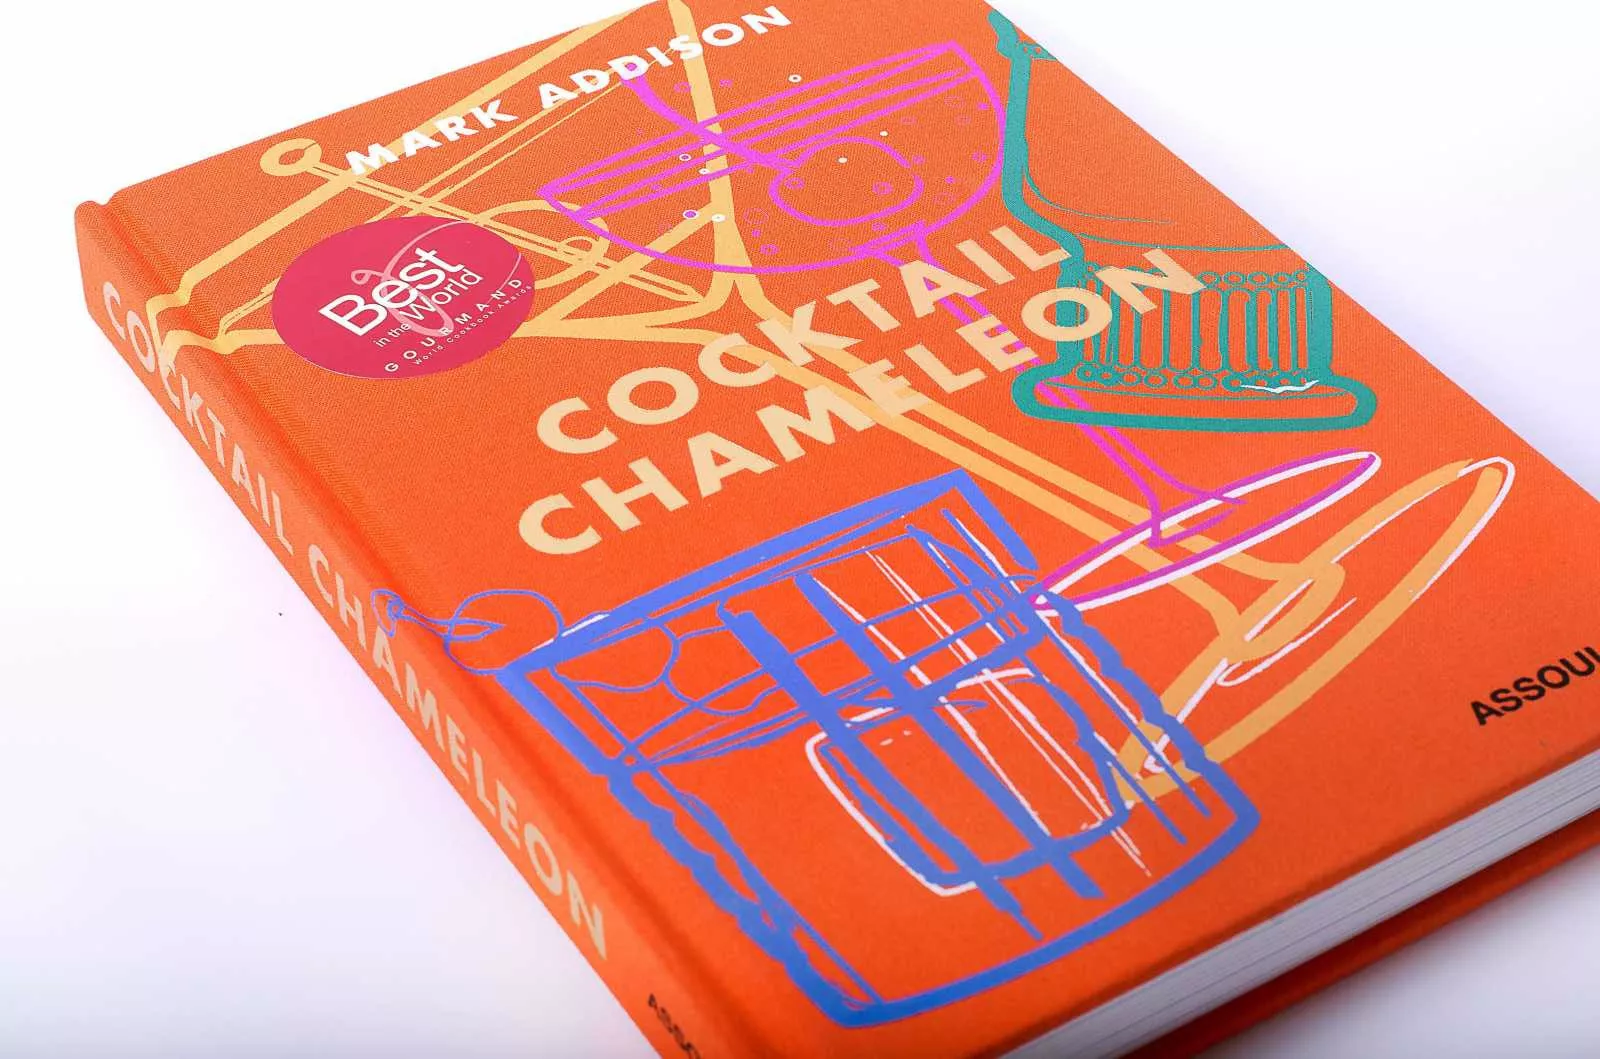 Книга "Cocktail Chameleon" Assouline Icons Collection (9781614286196) - Фото nav 6